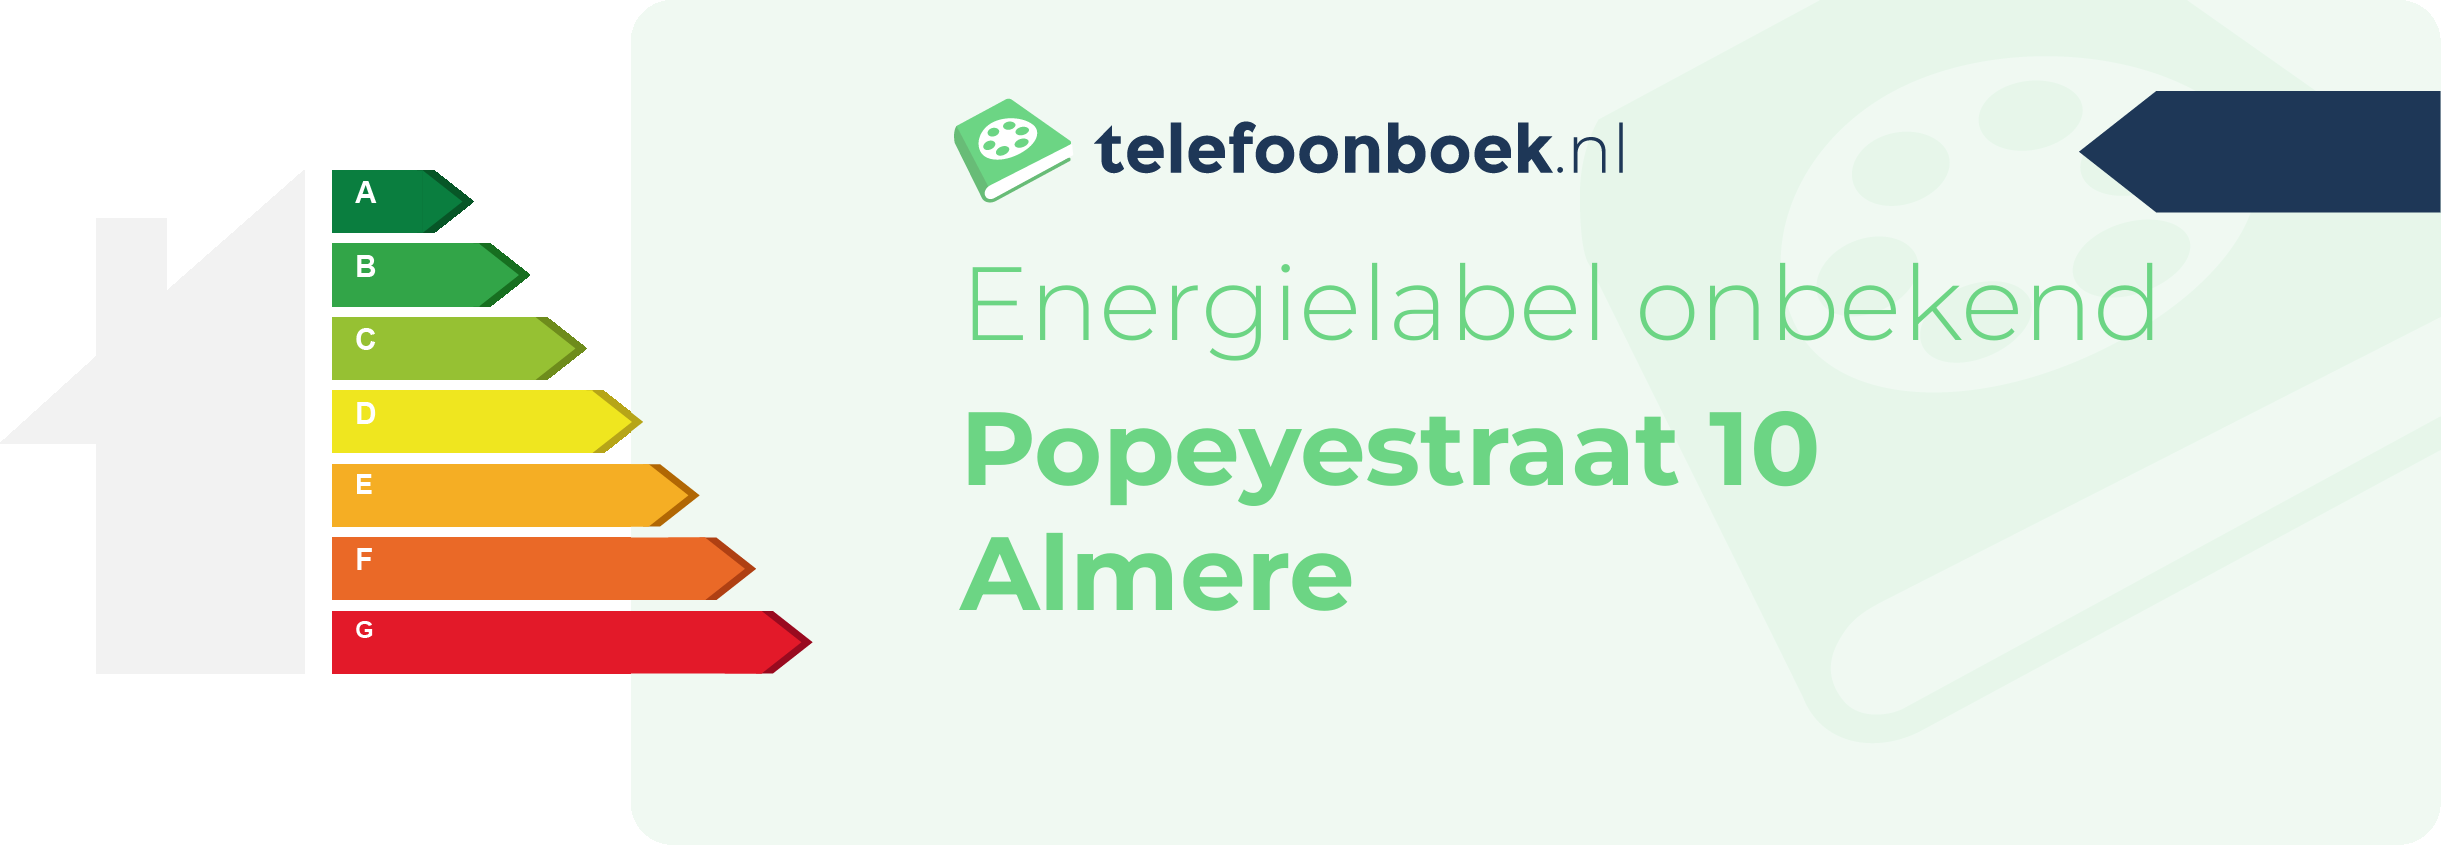 Energielabel Popeyestraat 10 Almere